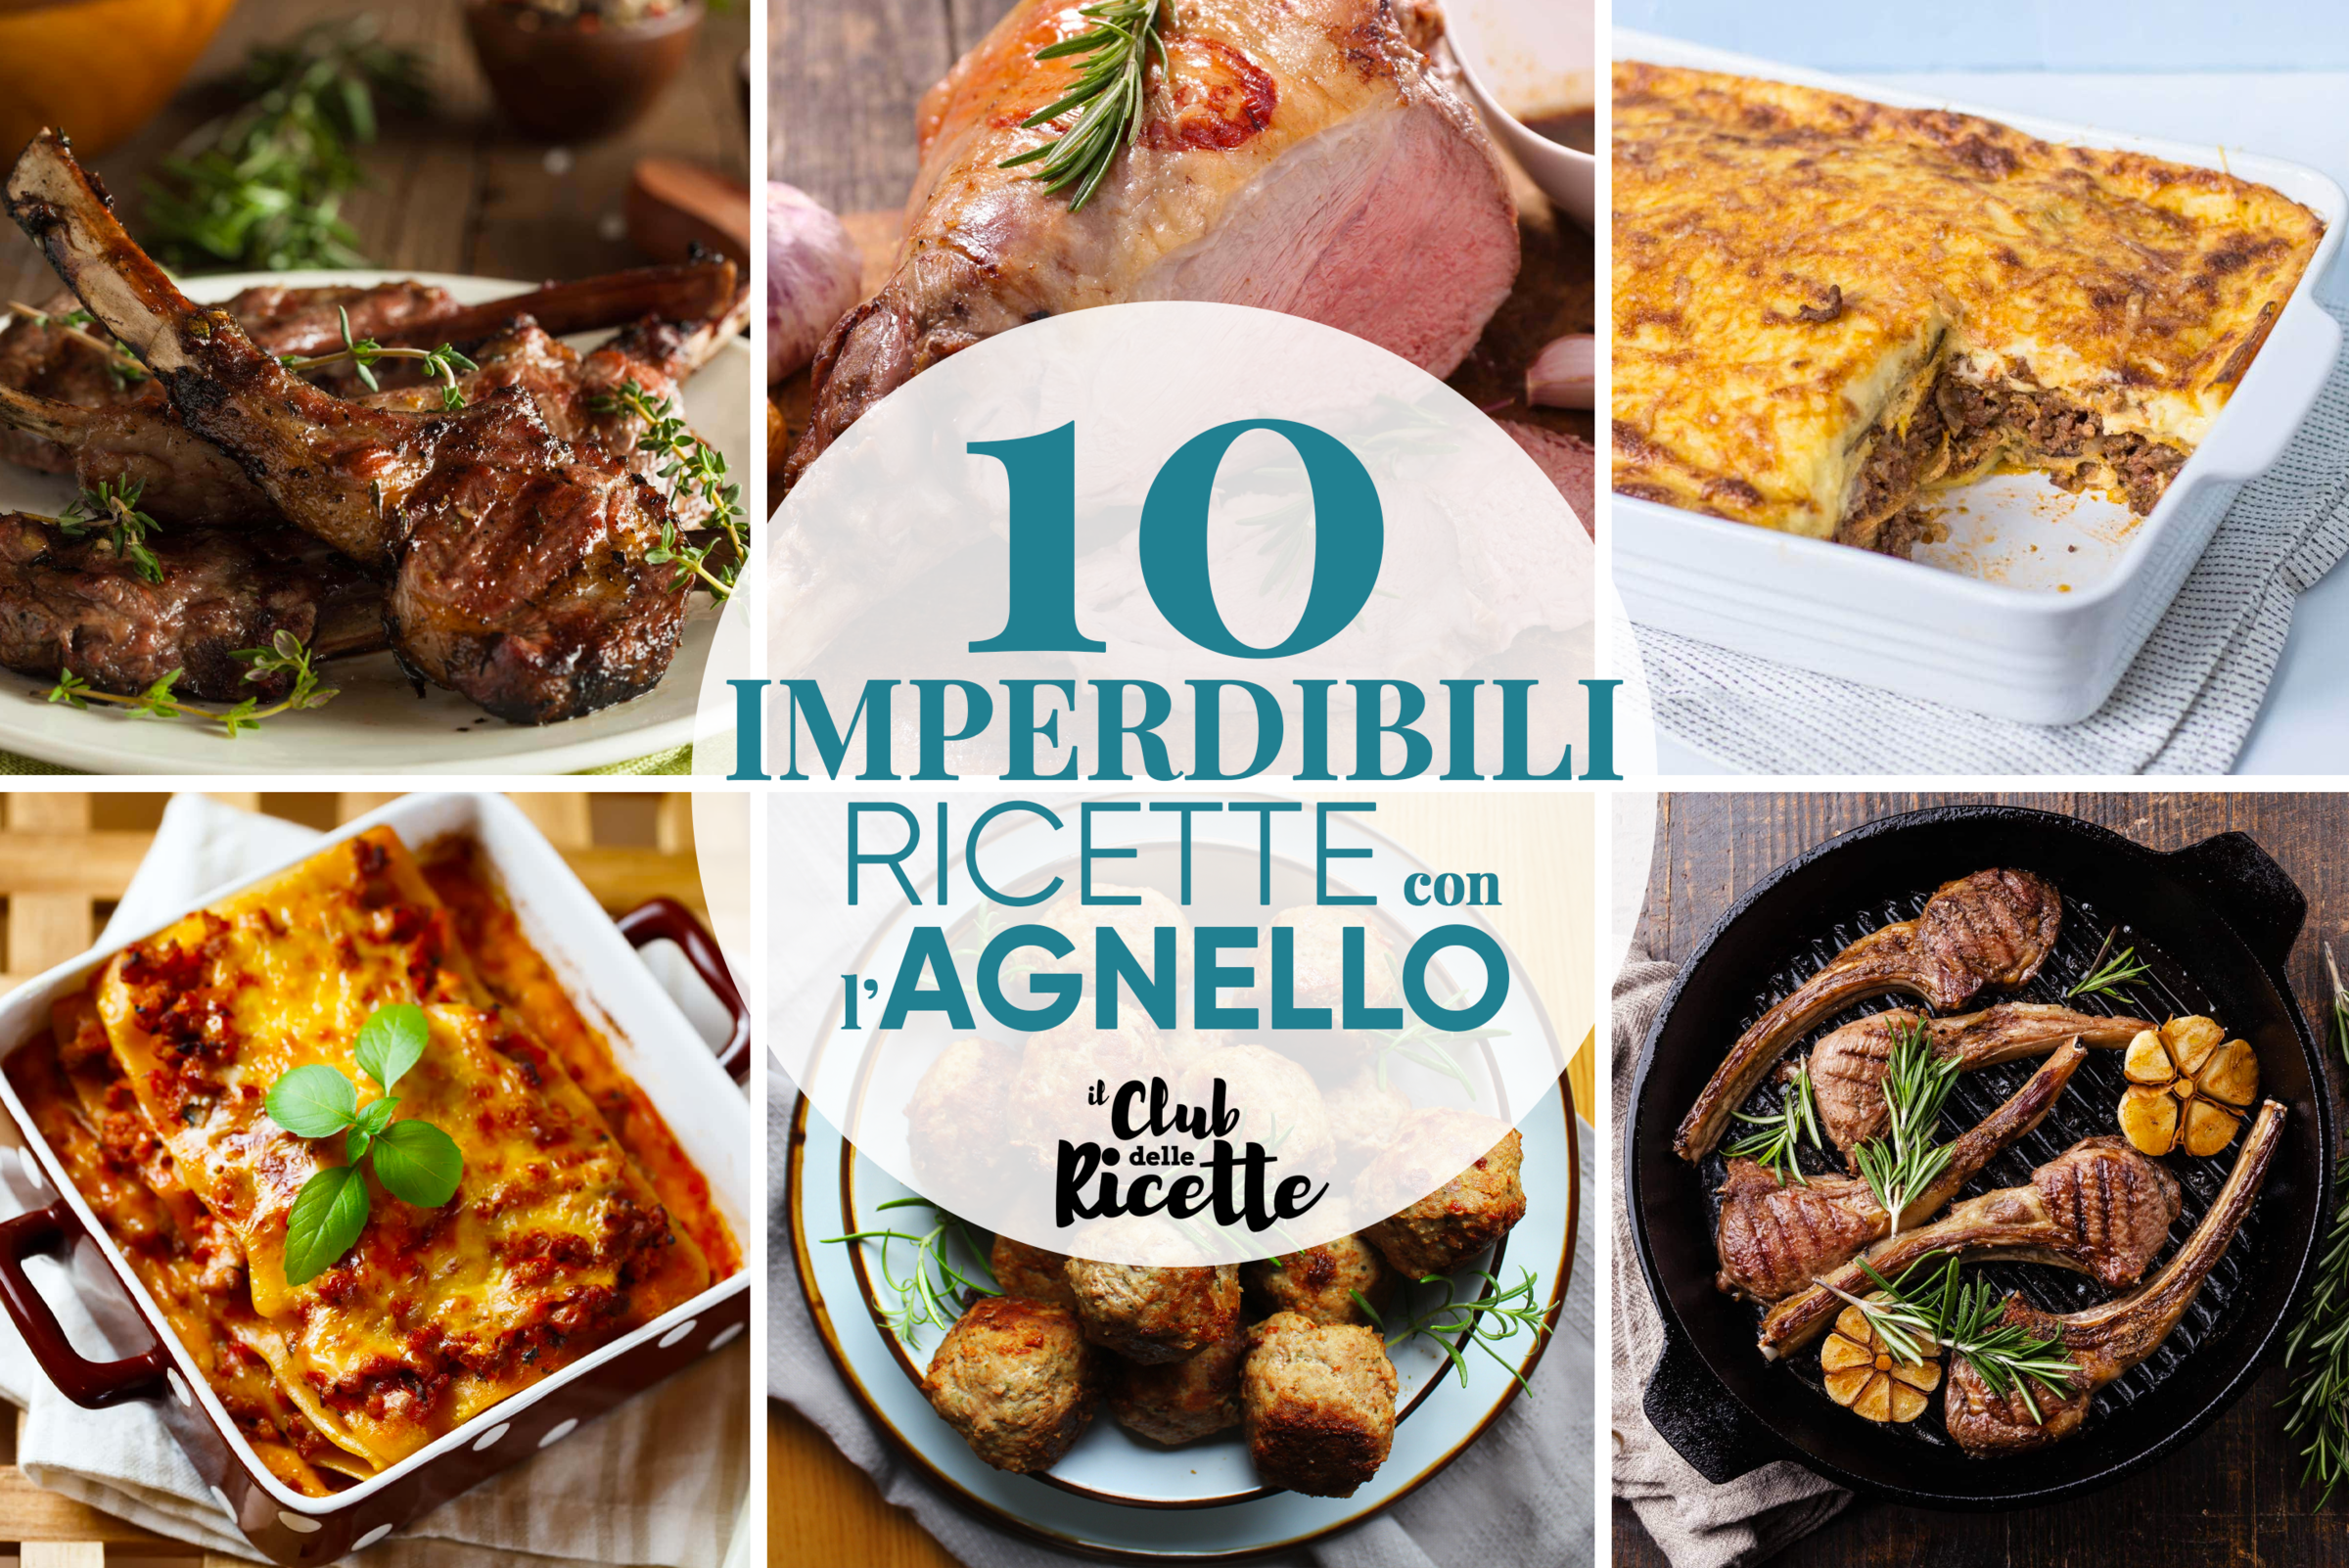 10 Imperdibili Ricette con l’Agnello